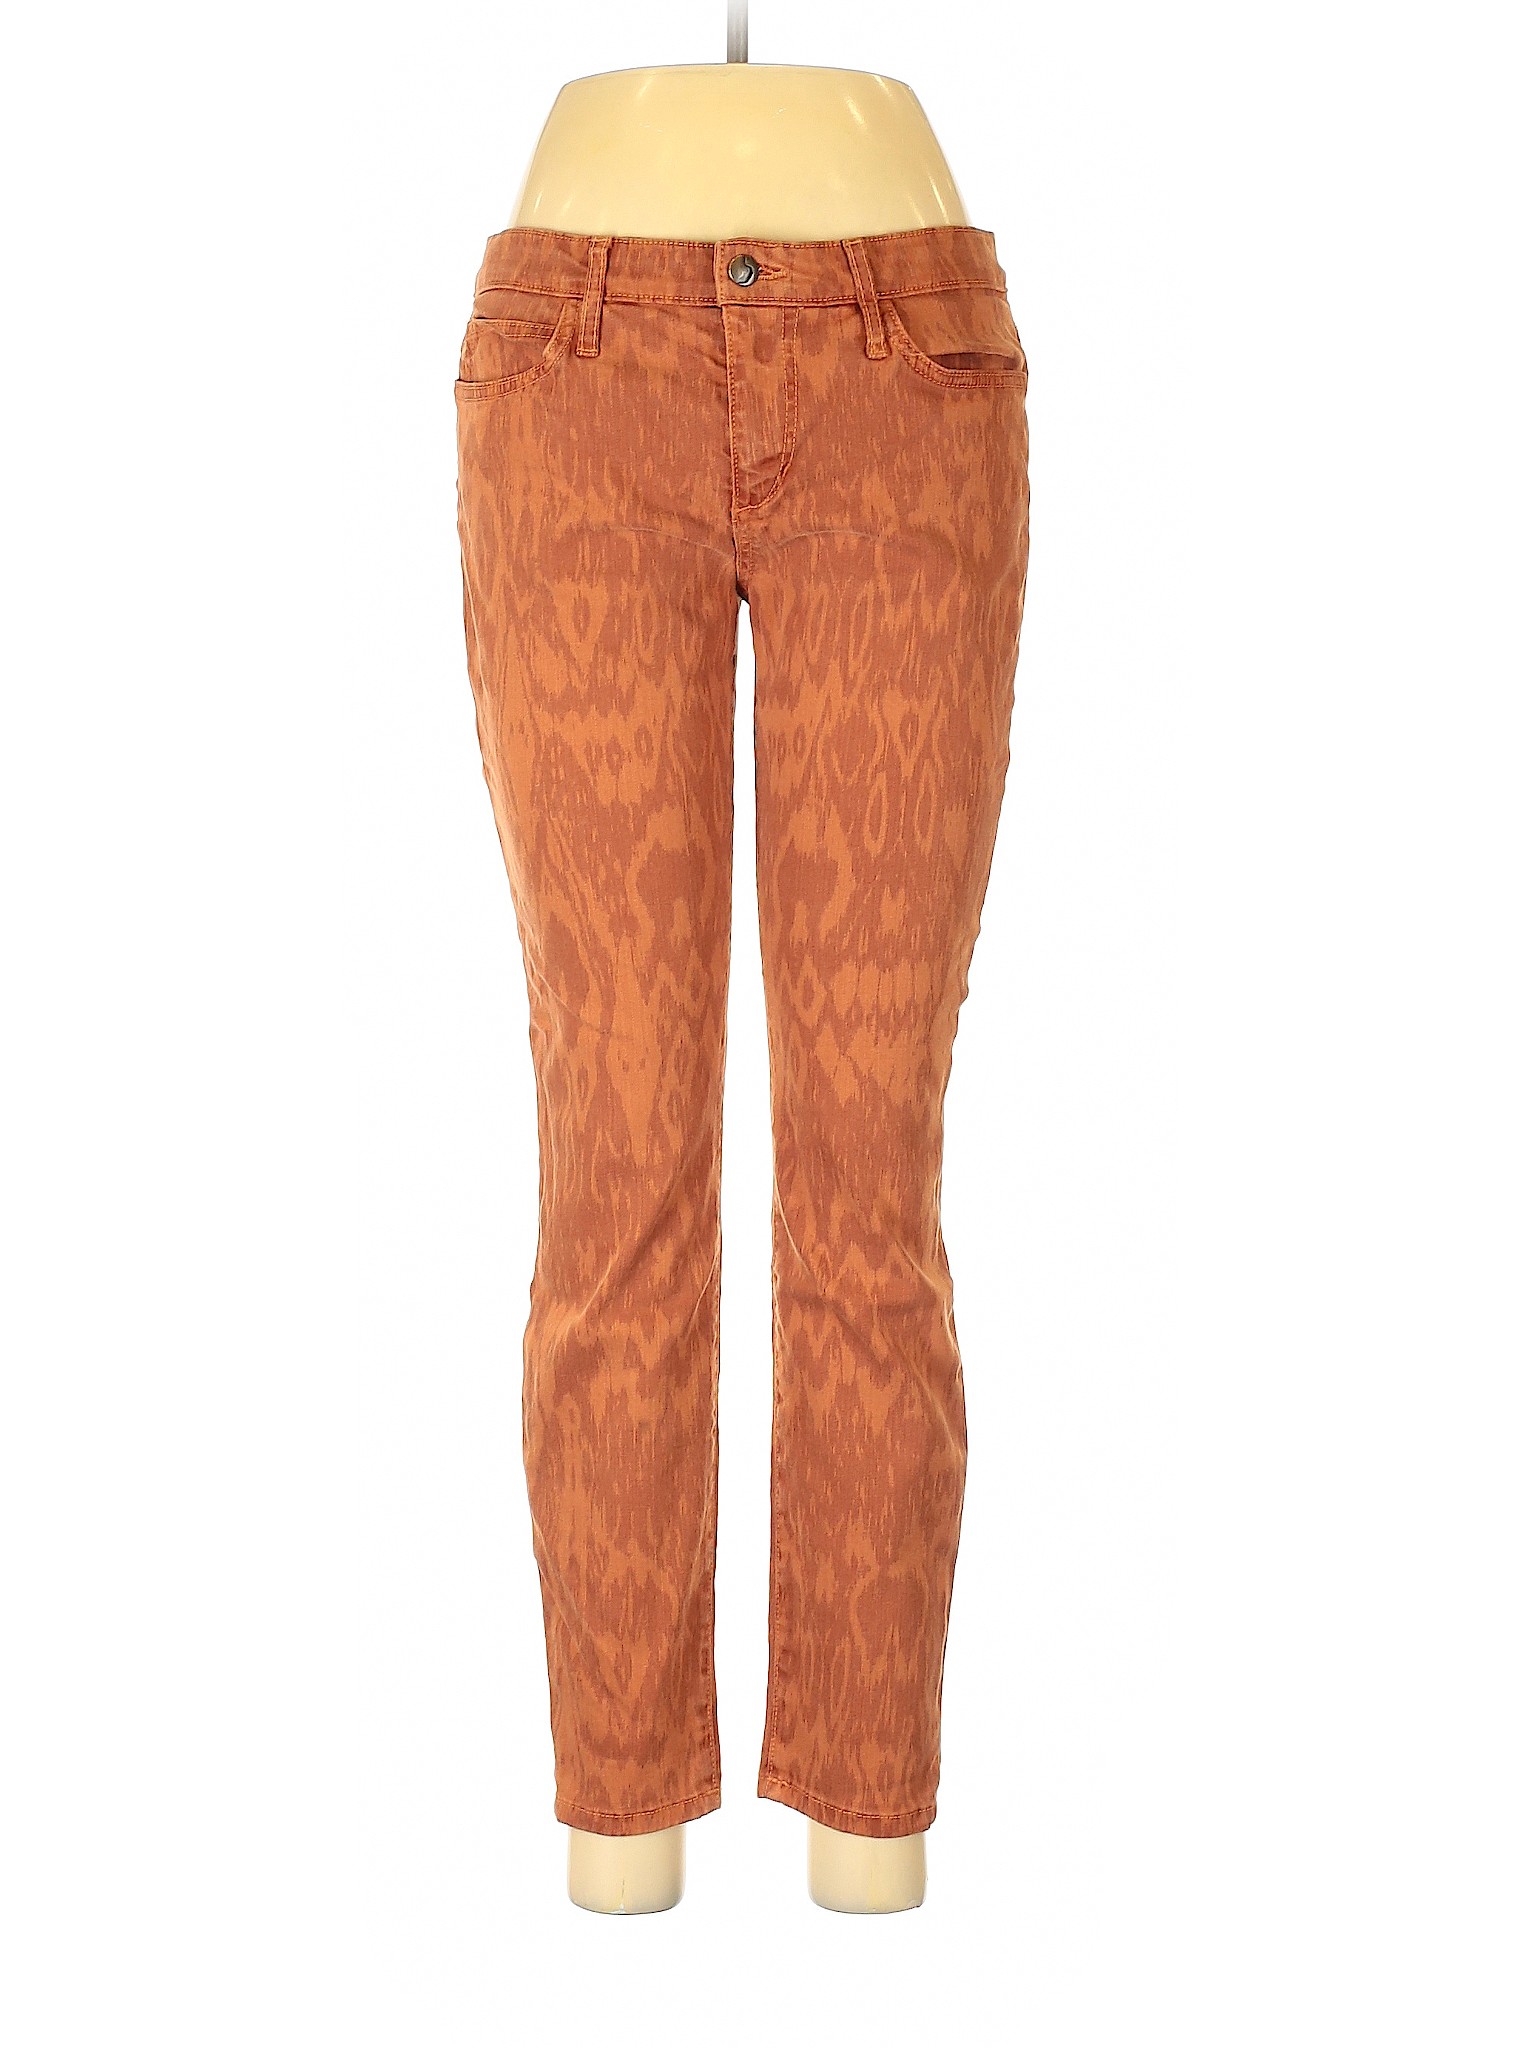 Joe's Jeans Women Orange Jeans 29W | eBay